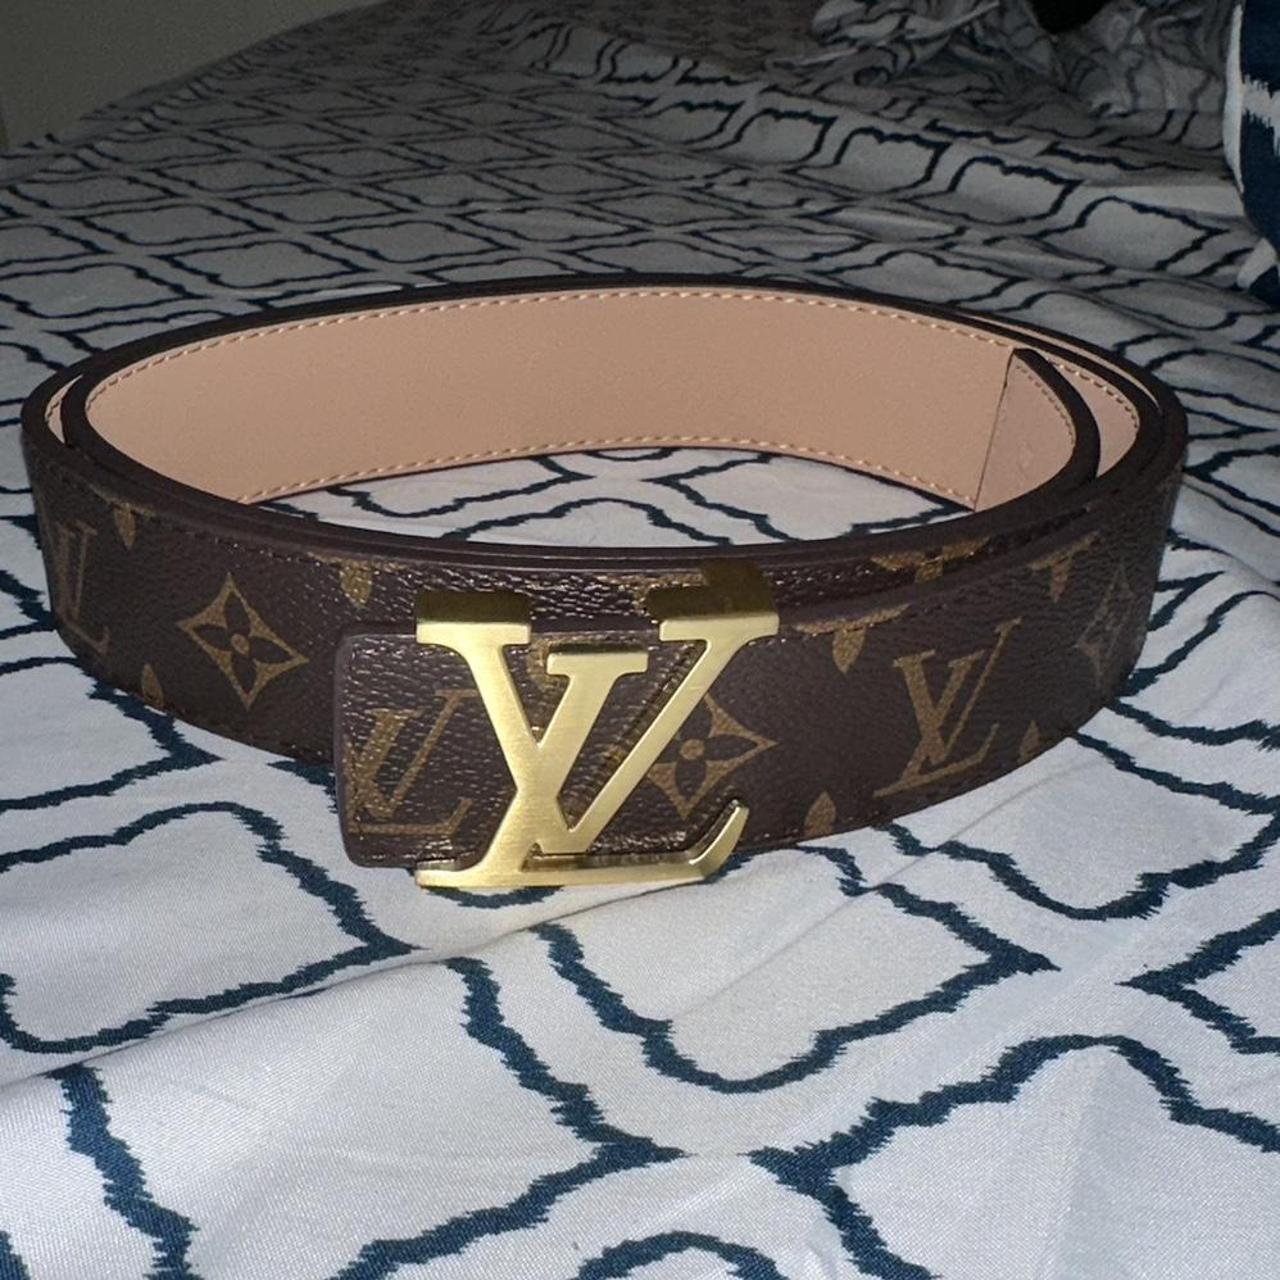 Louis Vuitton Belt Size 55. No box since it was